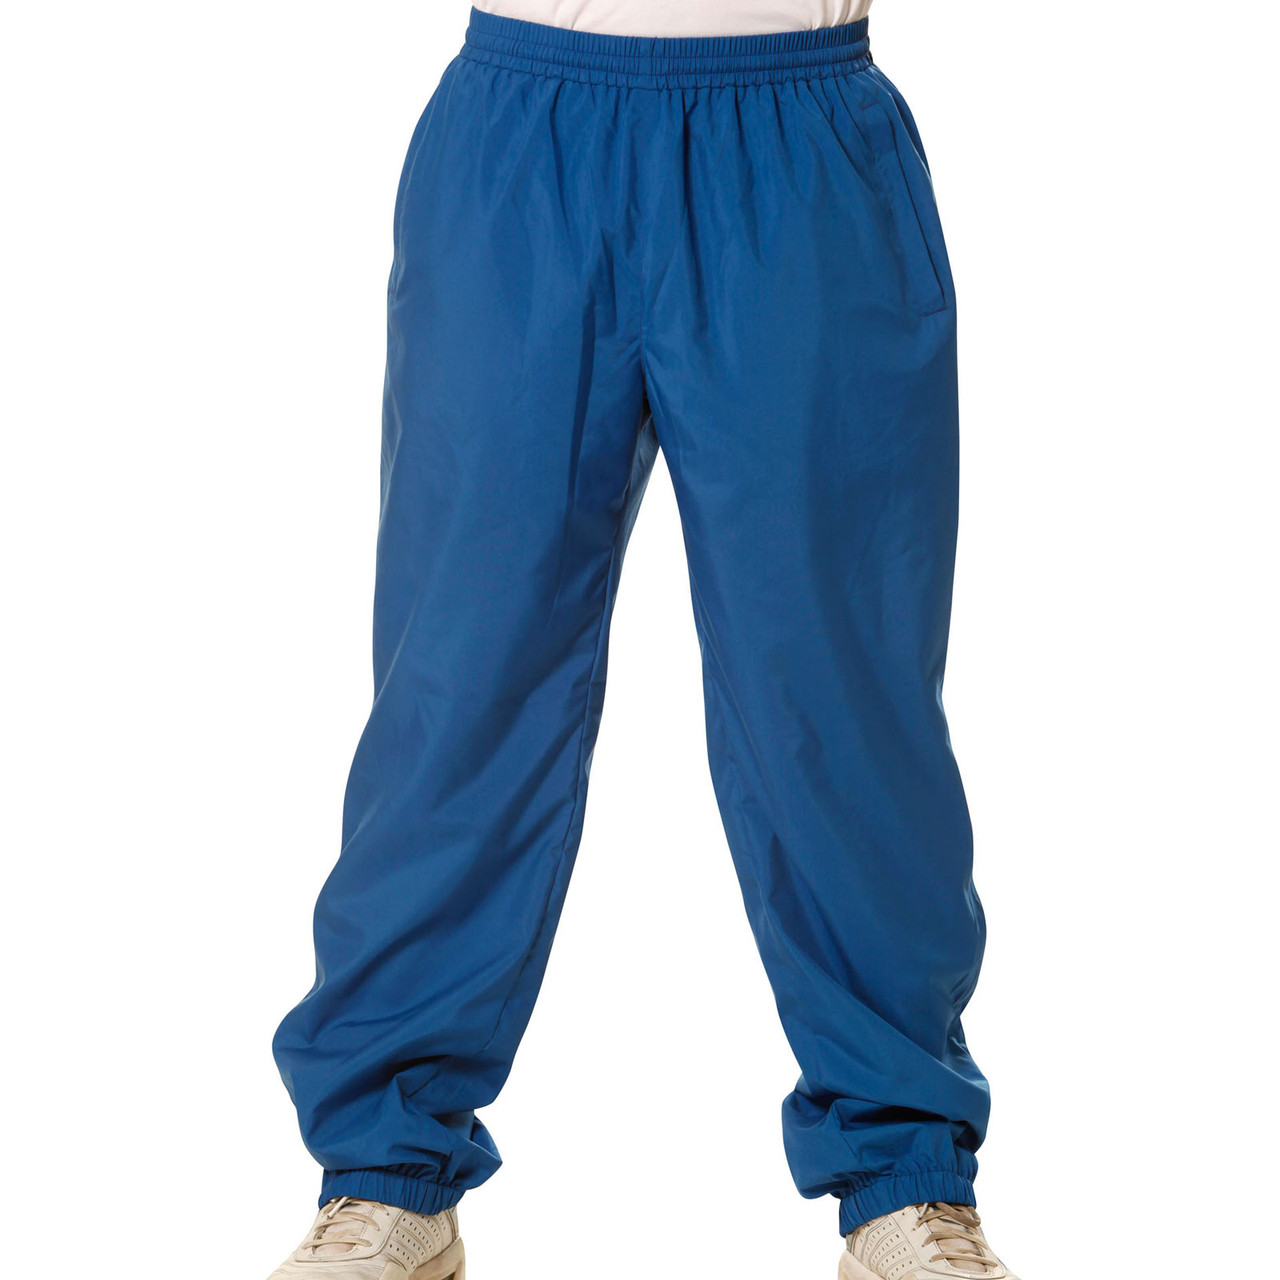 kids warm up pants | team uniform | sports gear | buy online plain pants